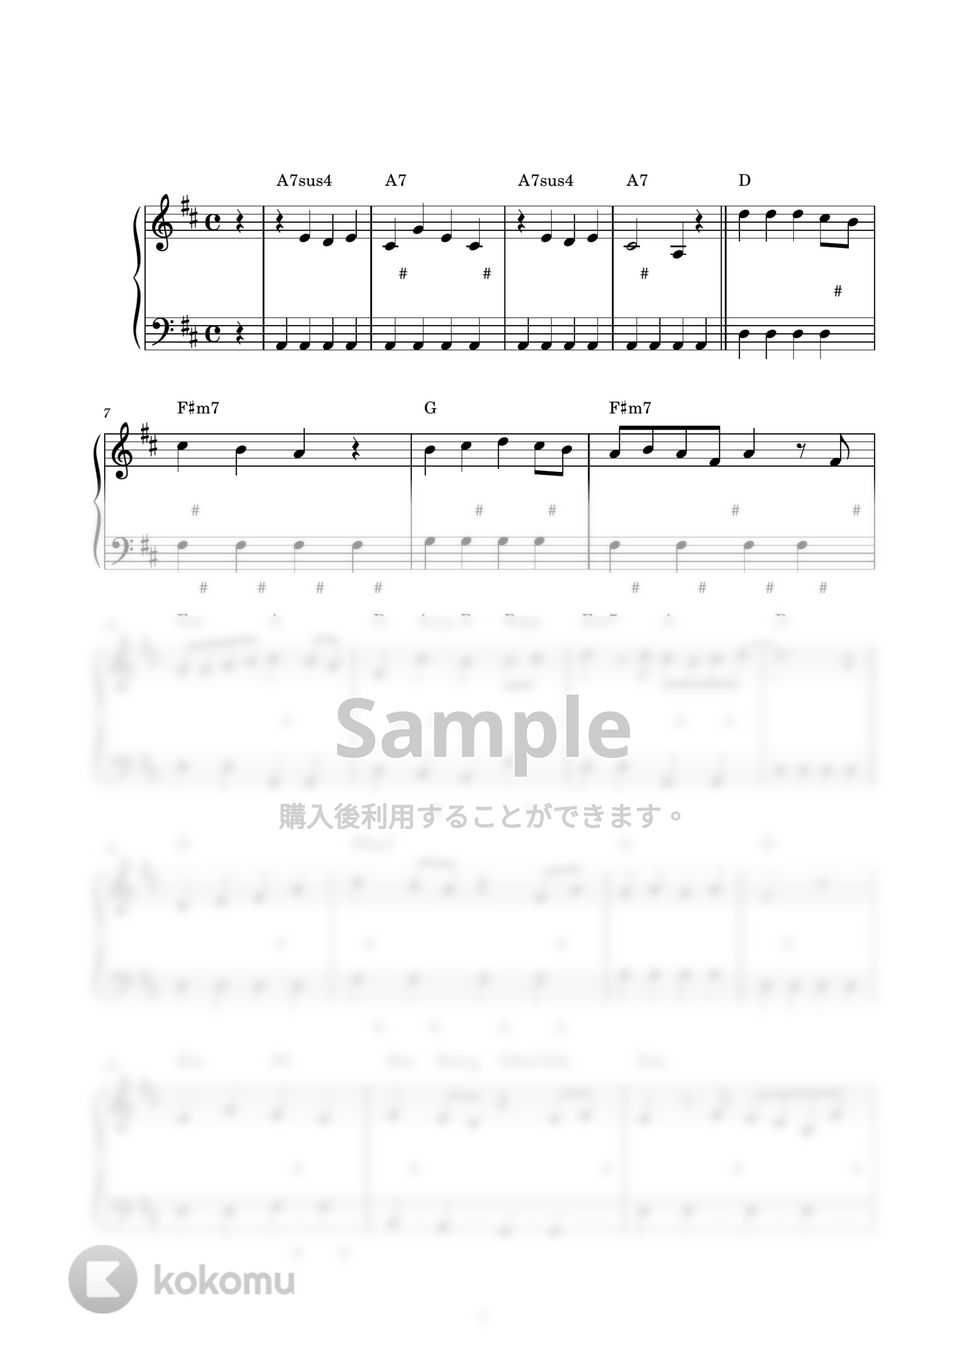 にじのむこうに (ピアノ楽譜 / かんたん両手 / 歌詞付き / ドレミ付き / 初心者向き) by piano.tokyo